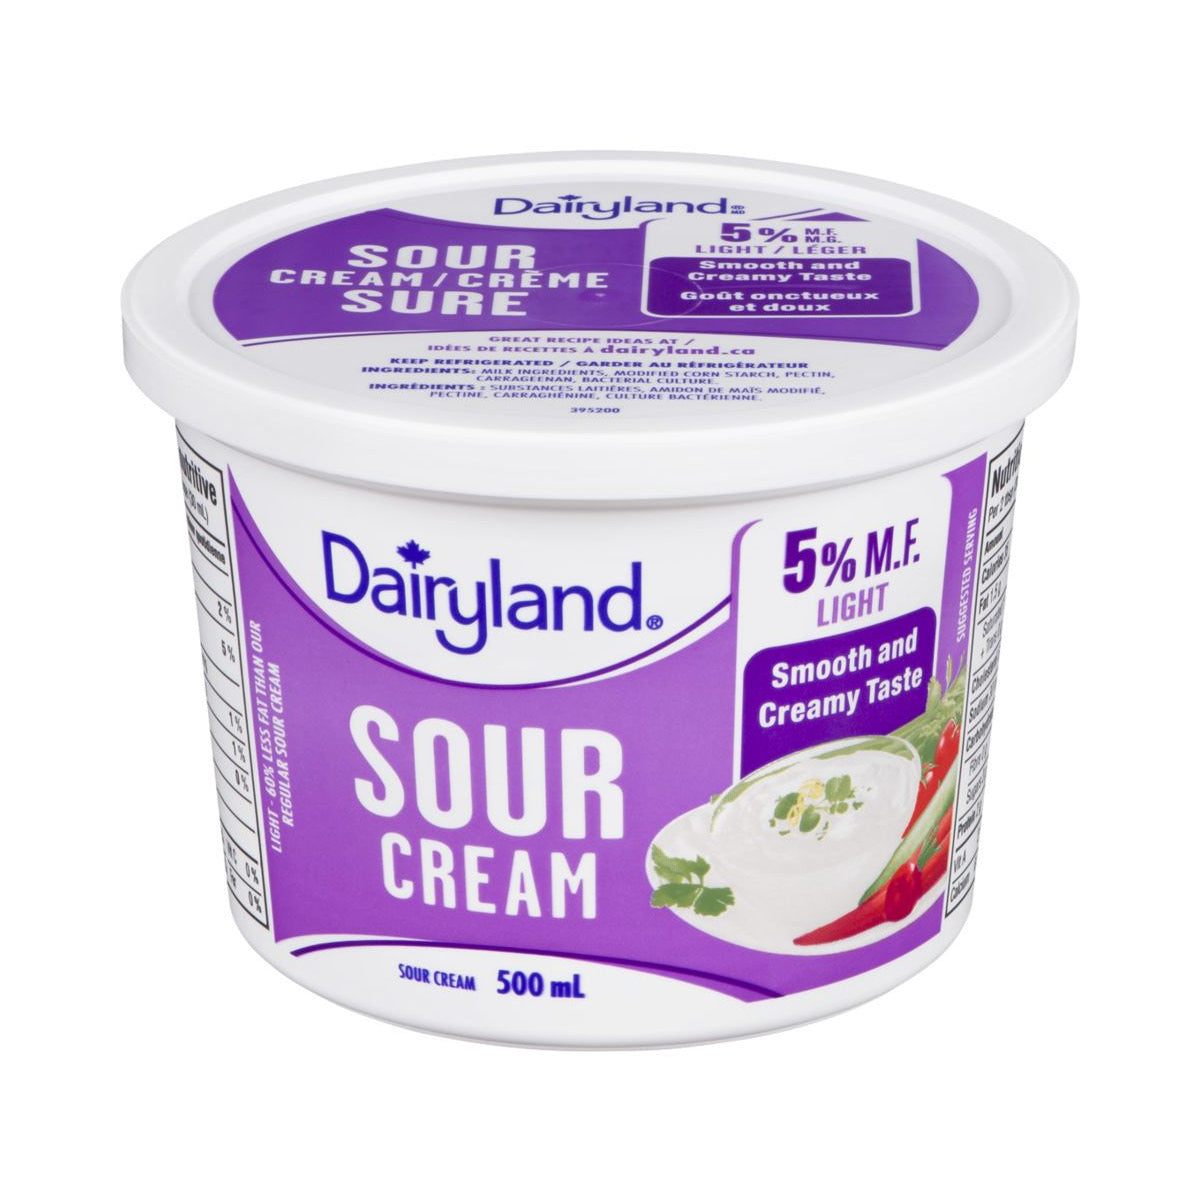 Light Sour Cream 5% M.F., 500 ml